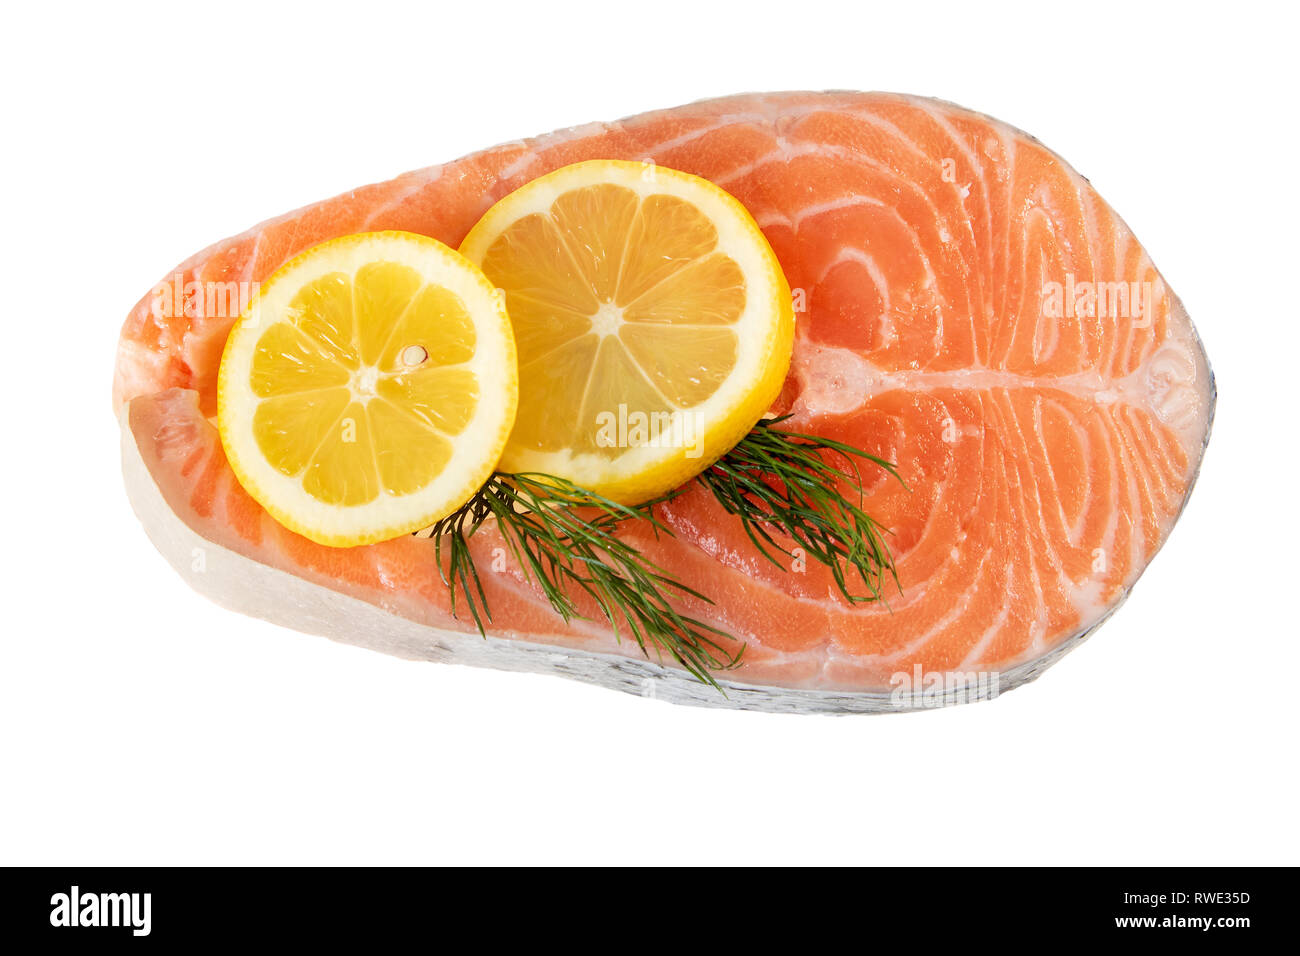 Lachs Fisch steak Roh ungekocht mit Zitronenscheibe auf Weiß. Flach, Ansicht von oben Stockfoto